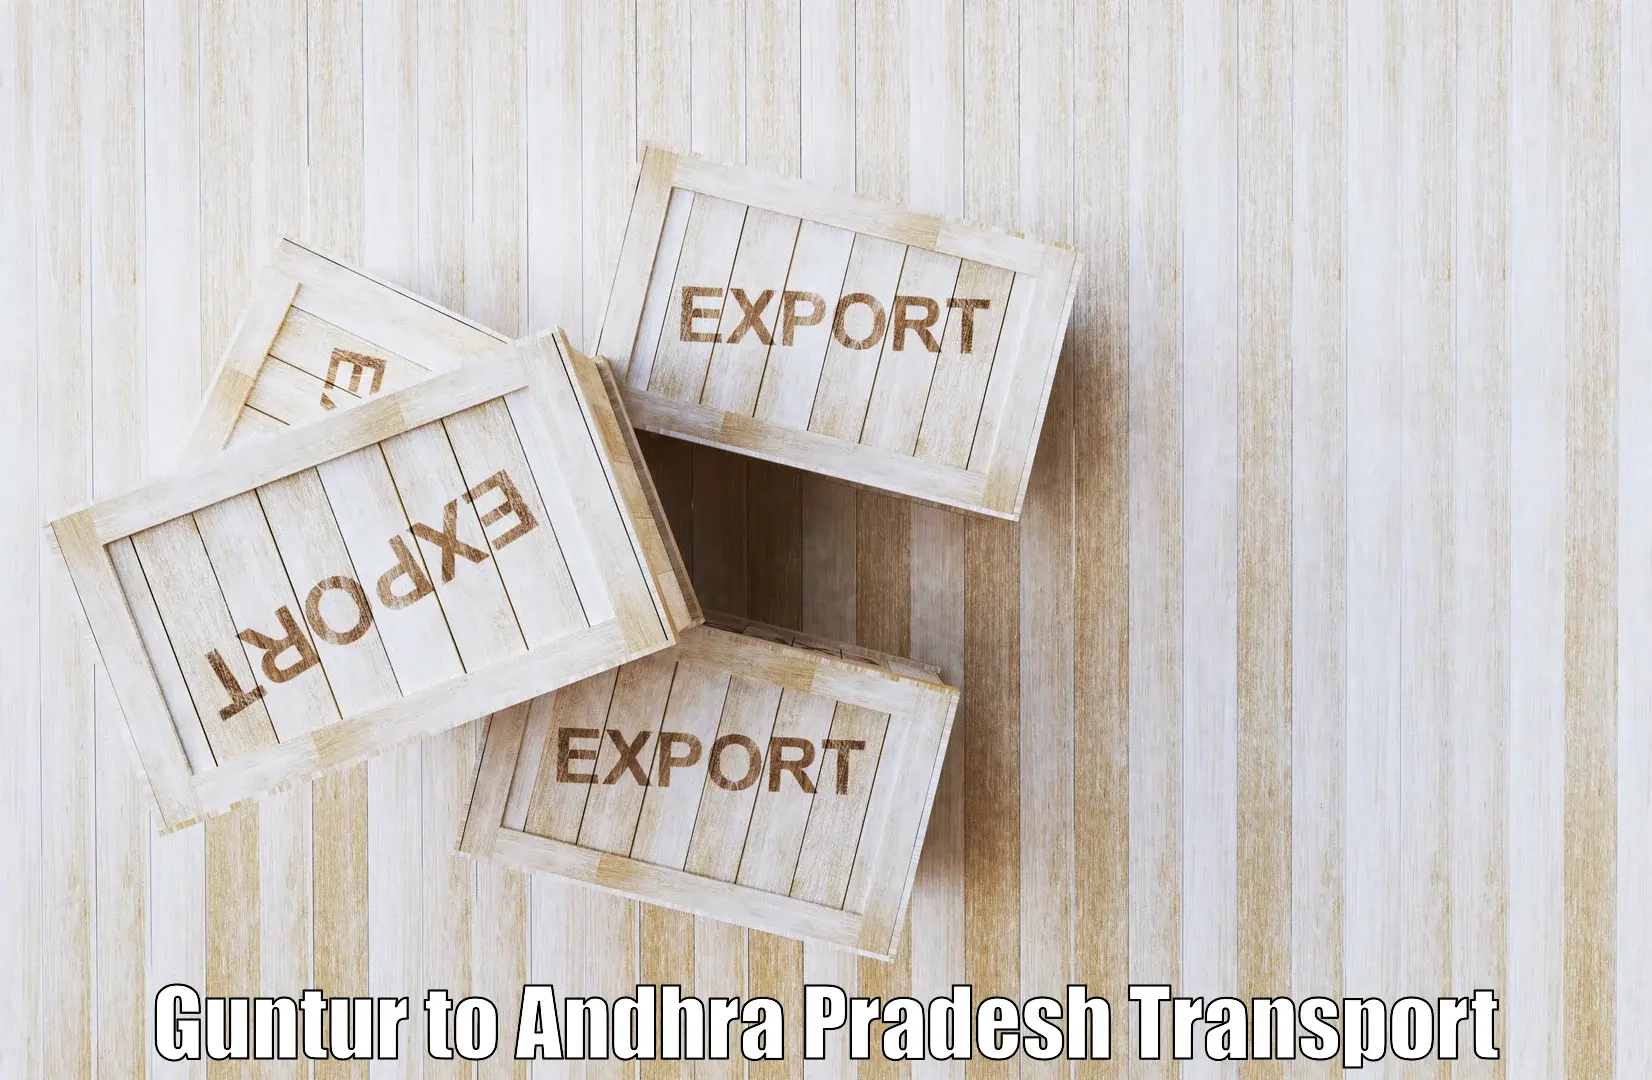 Truck transport companies in India Guntur to Andhra Pradesh